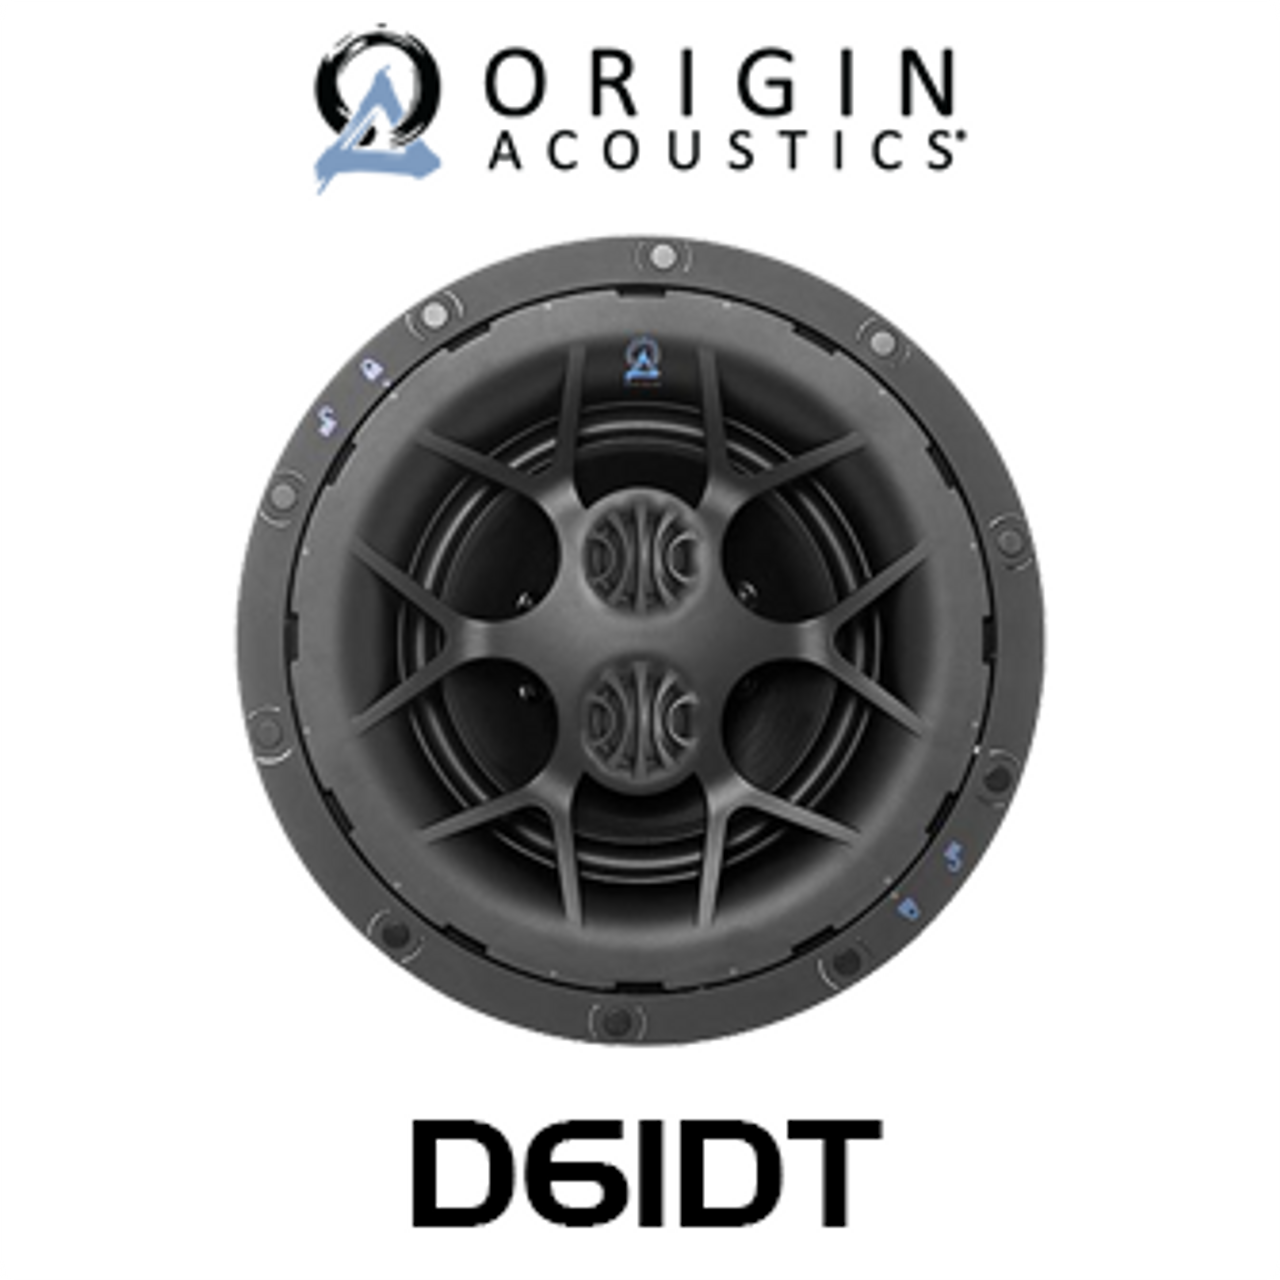 Origin Acoustics Director D61DT 6.5" Single Stereo In-Ceiling Speaker (Each)